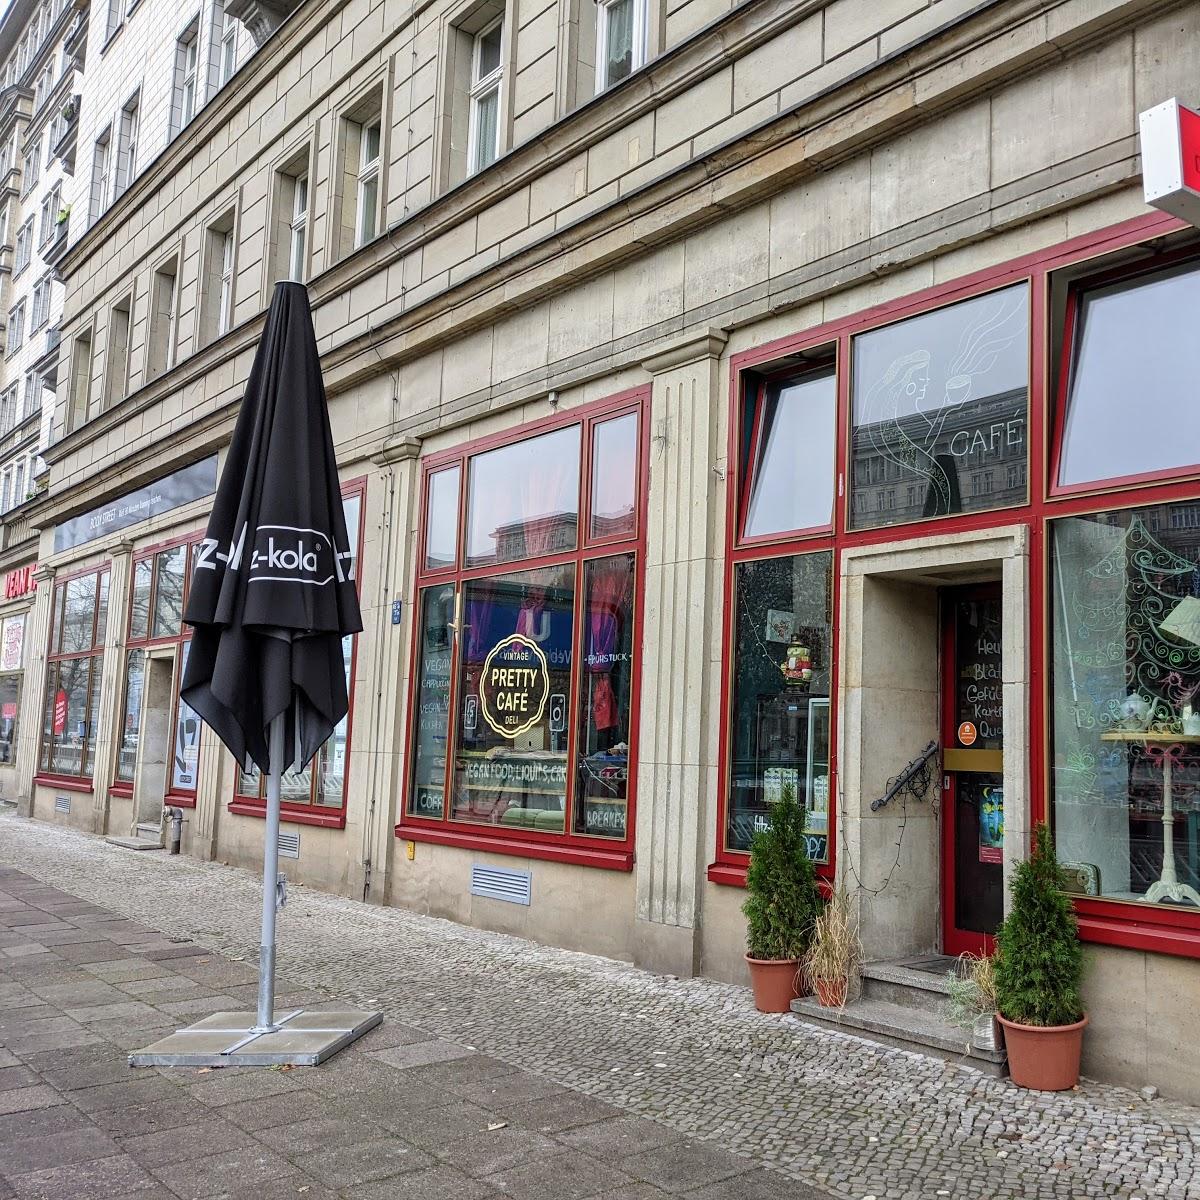 Restaurant "Pretty Café Deli" in Berlin